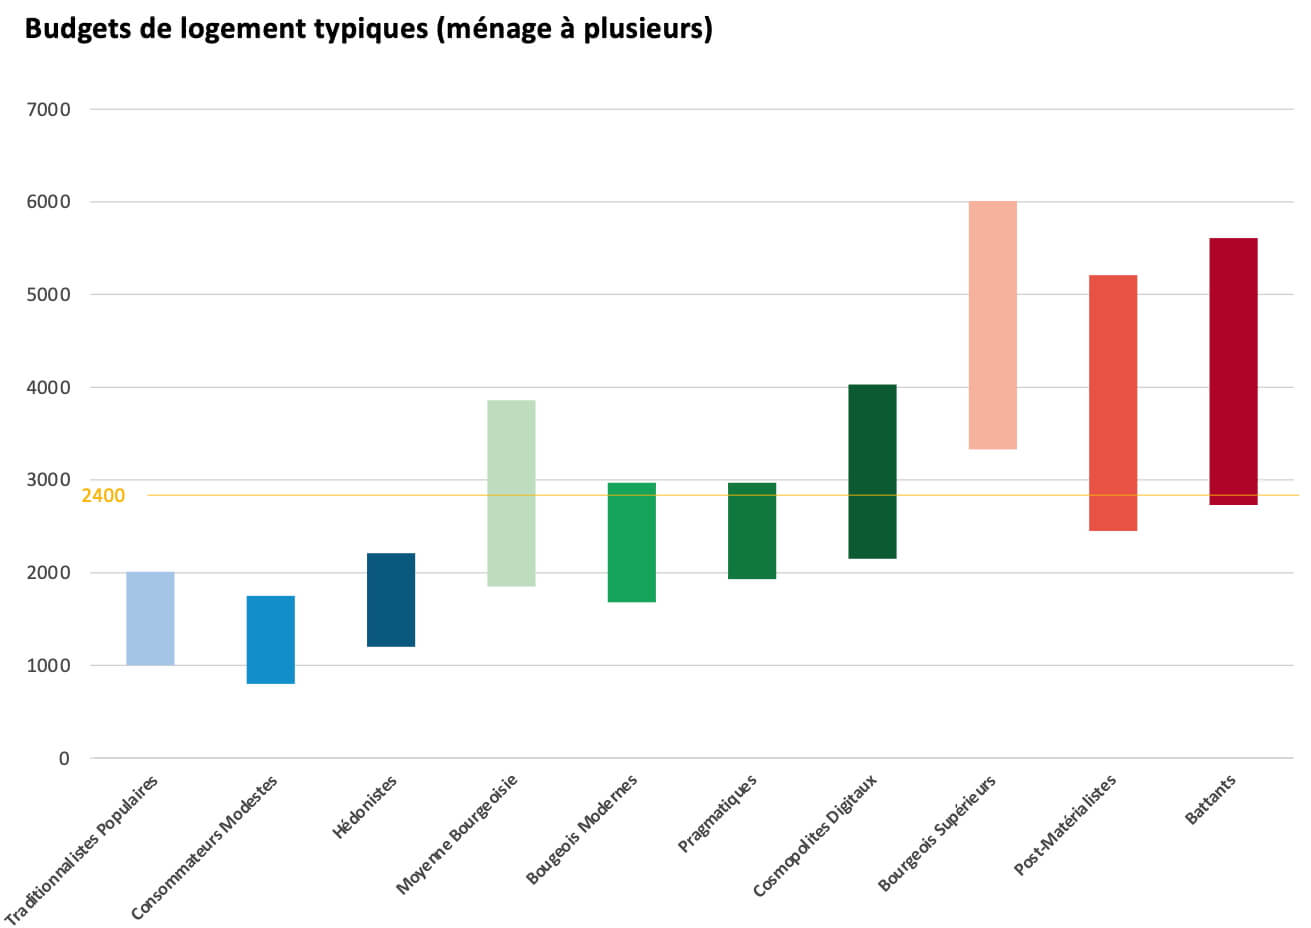 Figure 1: Budgets de logement des couples/familles en CHF par mois Source: Sinus-Milieus Living